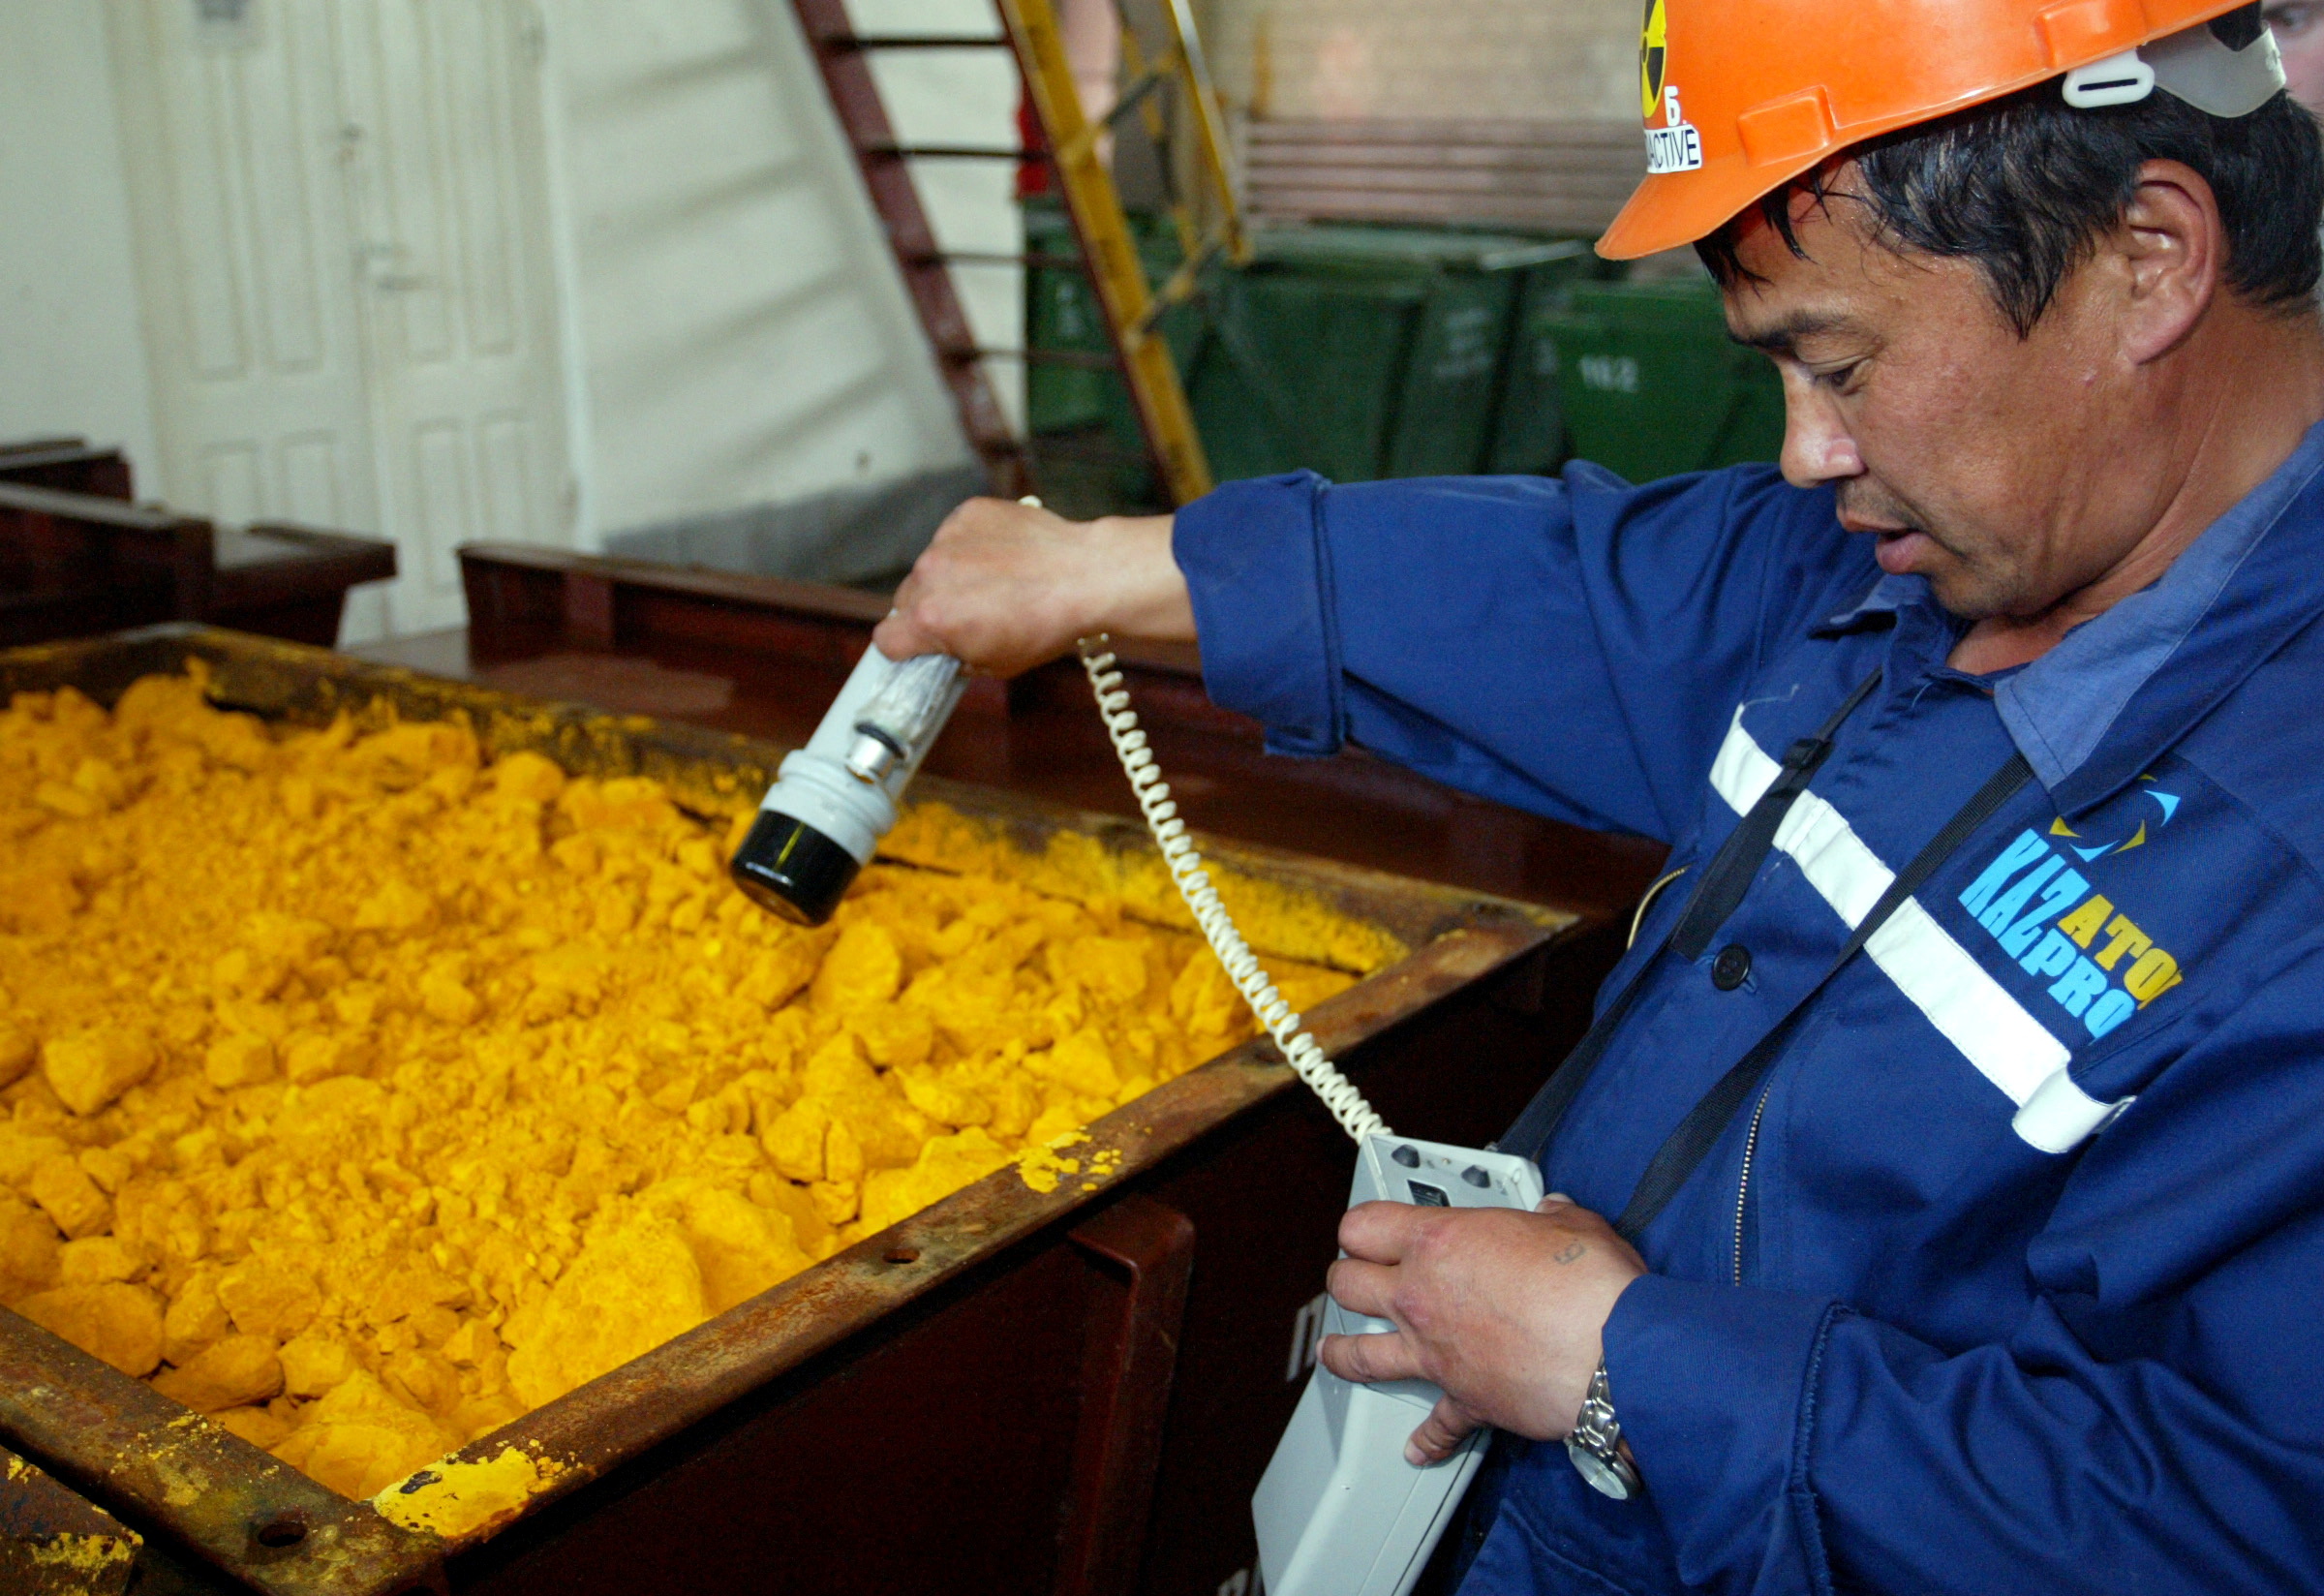 Archivo: un trabajador controla los niveles de radiación en un contenedor de óxido de uranio en Kazajistán (REUTERS/Vladimir Pirogov)